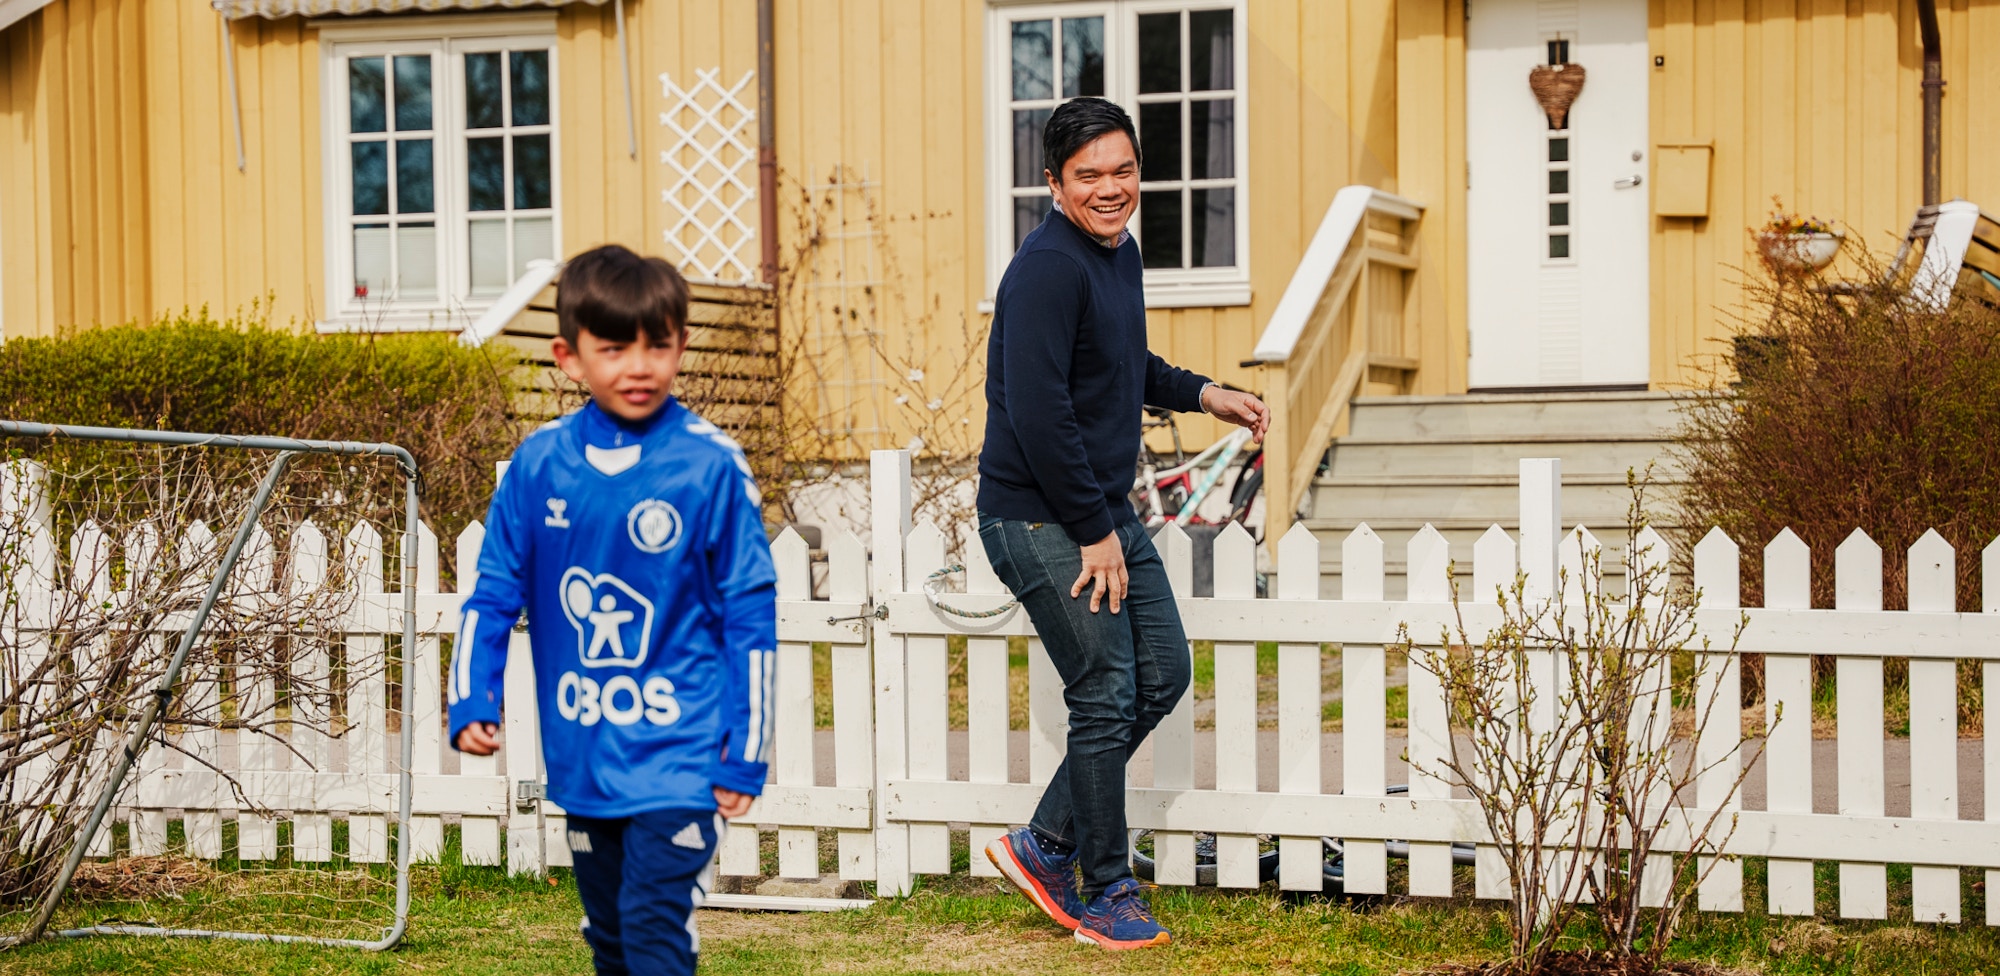 Far og sønn i familien Ødegaard Matibag spiller fotball i hagen foran gule rekkehus.